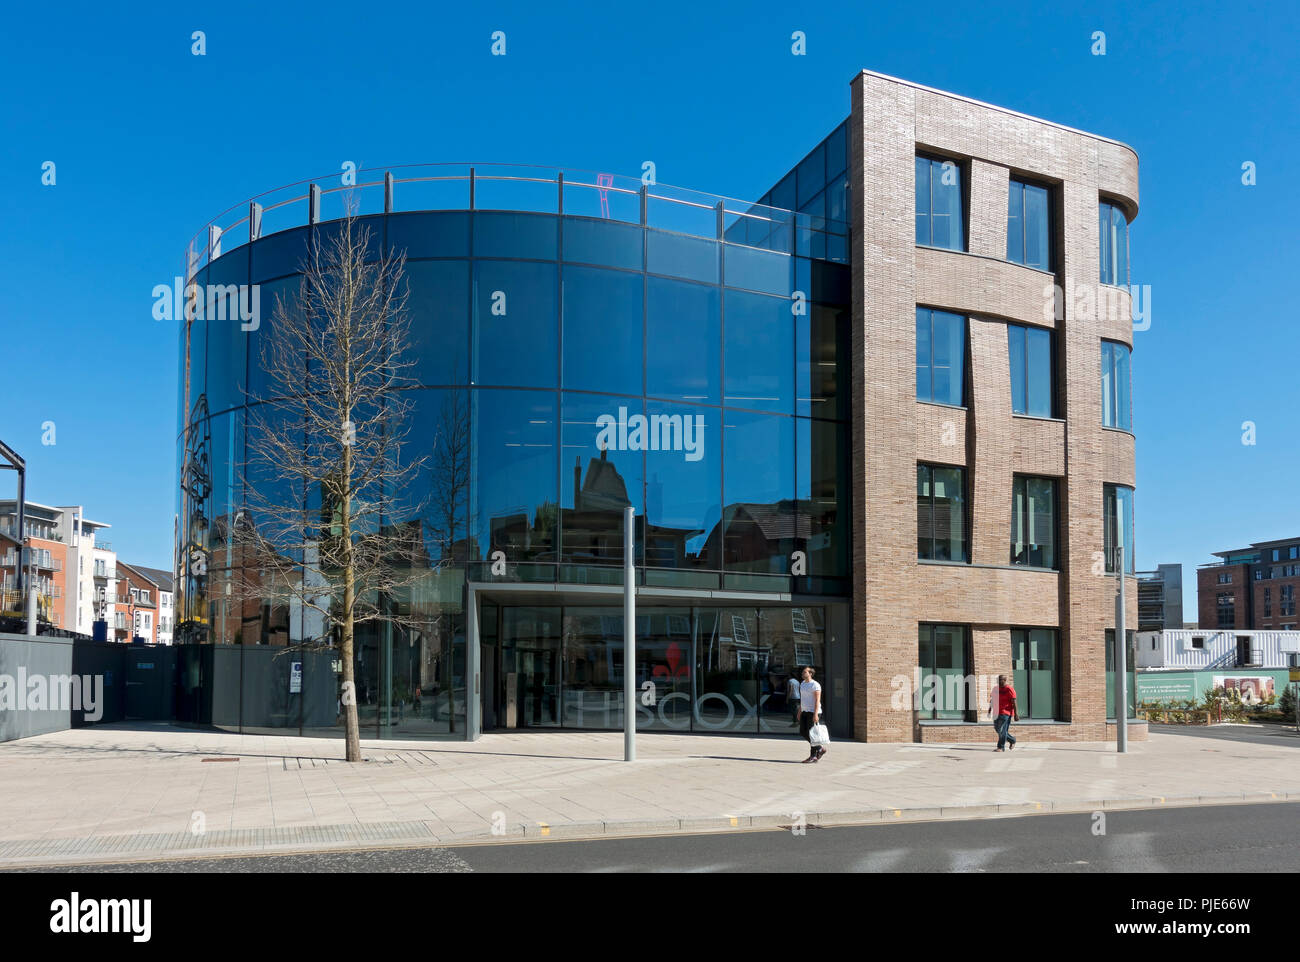 Bureaux modernes d'assurance Hiscox à la façade de verre dans le centre-ville en été York North Yorkshire Angleterre Royaume-Uni GB Grande-Bretagne Banque D'Images